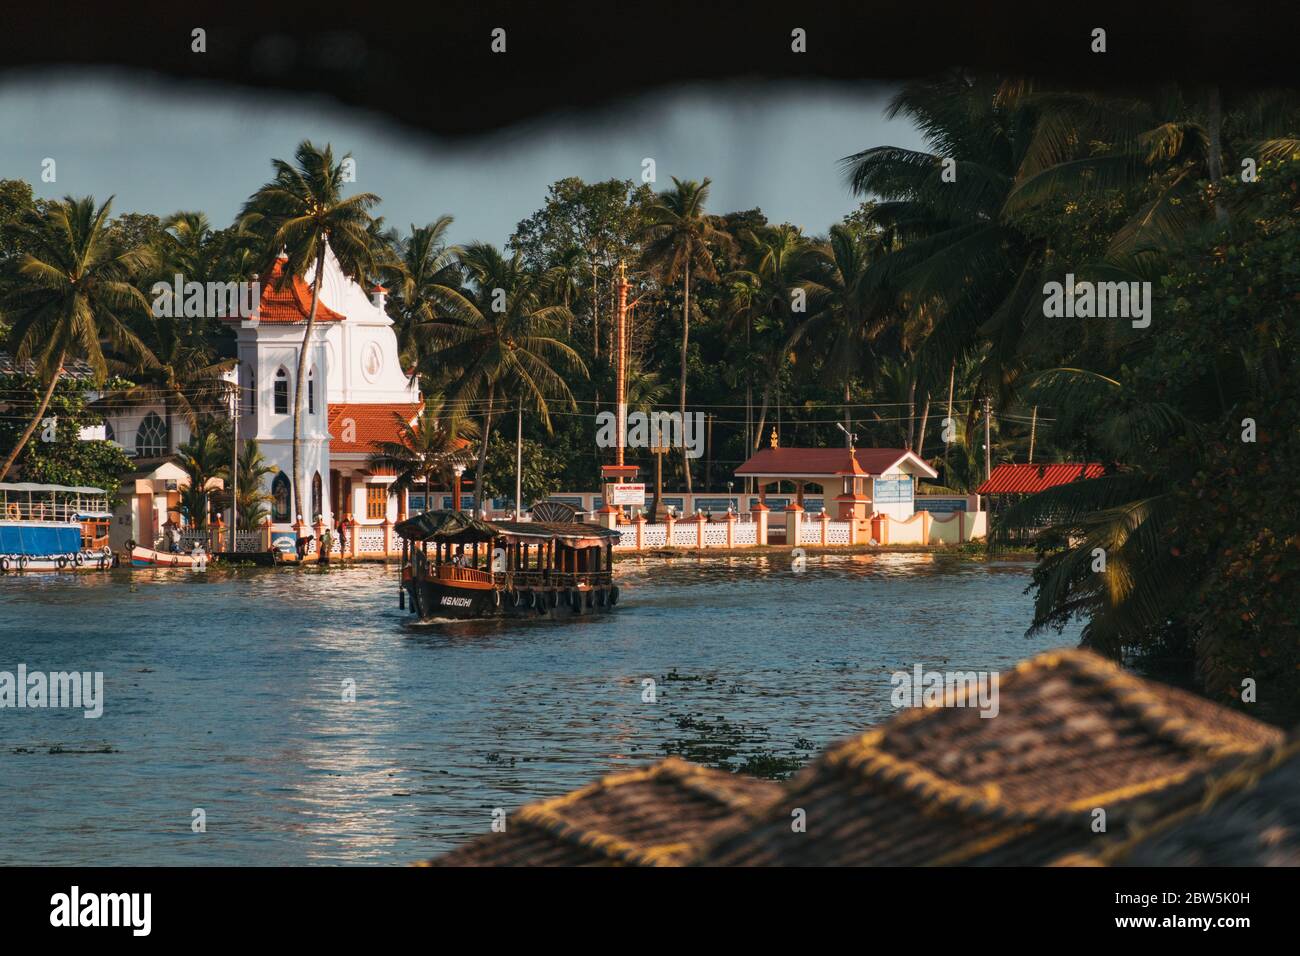 Ein Hausboot treibt an einer kleinen christlichen Kirche am Ufer des Kerala-Hinterwassers in Indien vorbei Stockfoto